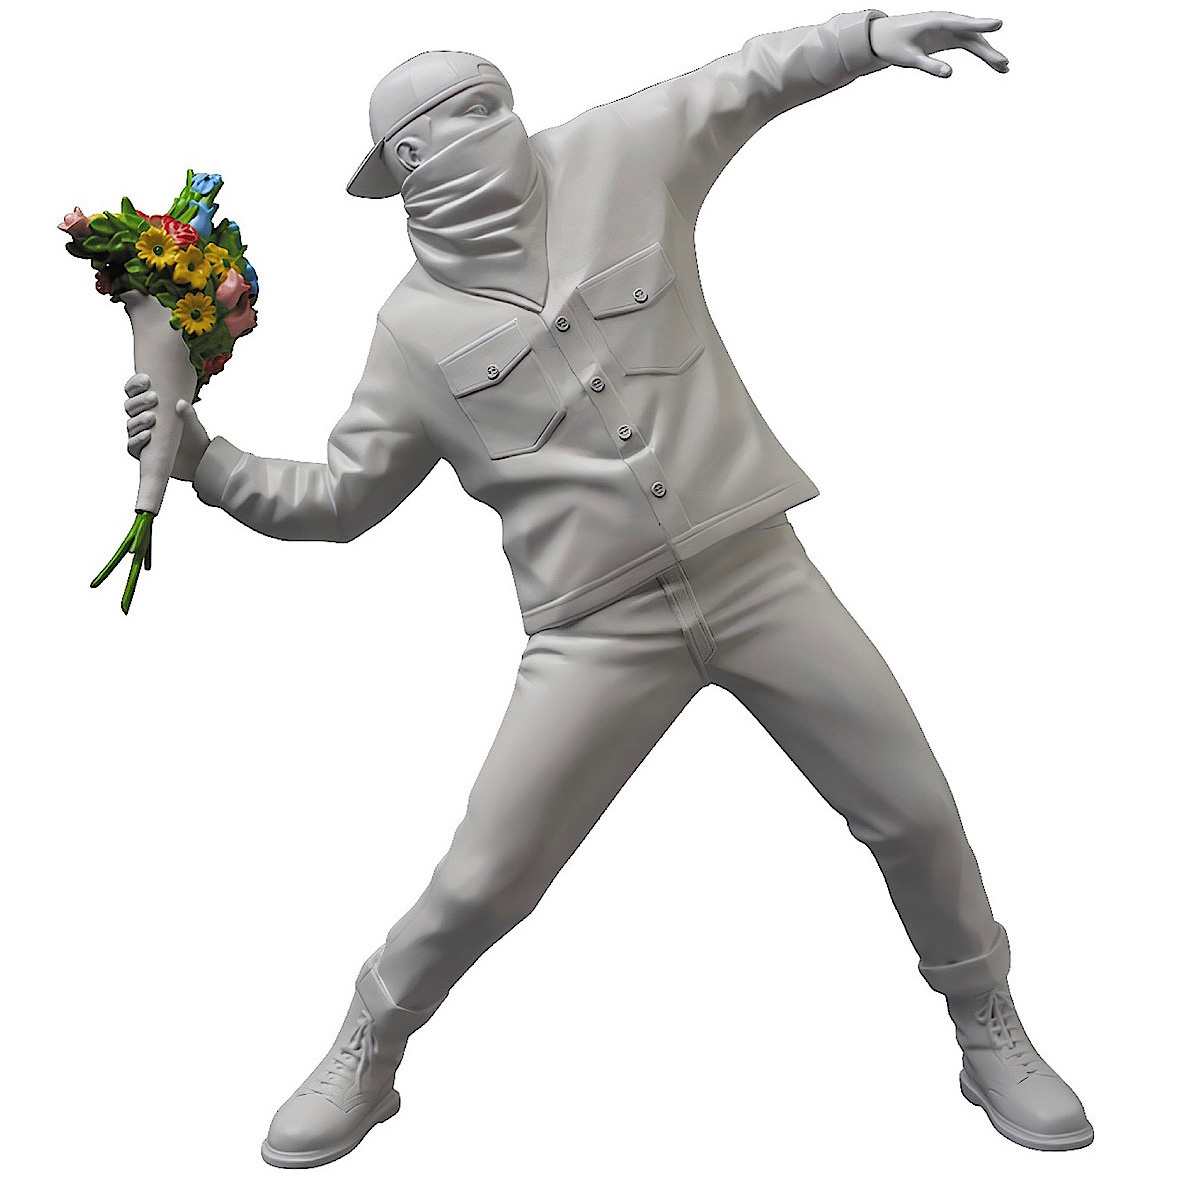 3FT Flower Bomber Sculpture (White) by Banksy (BRANDALISM) x Medicom